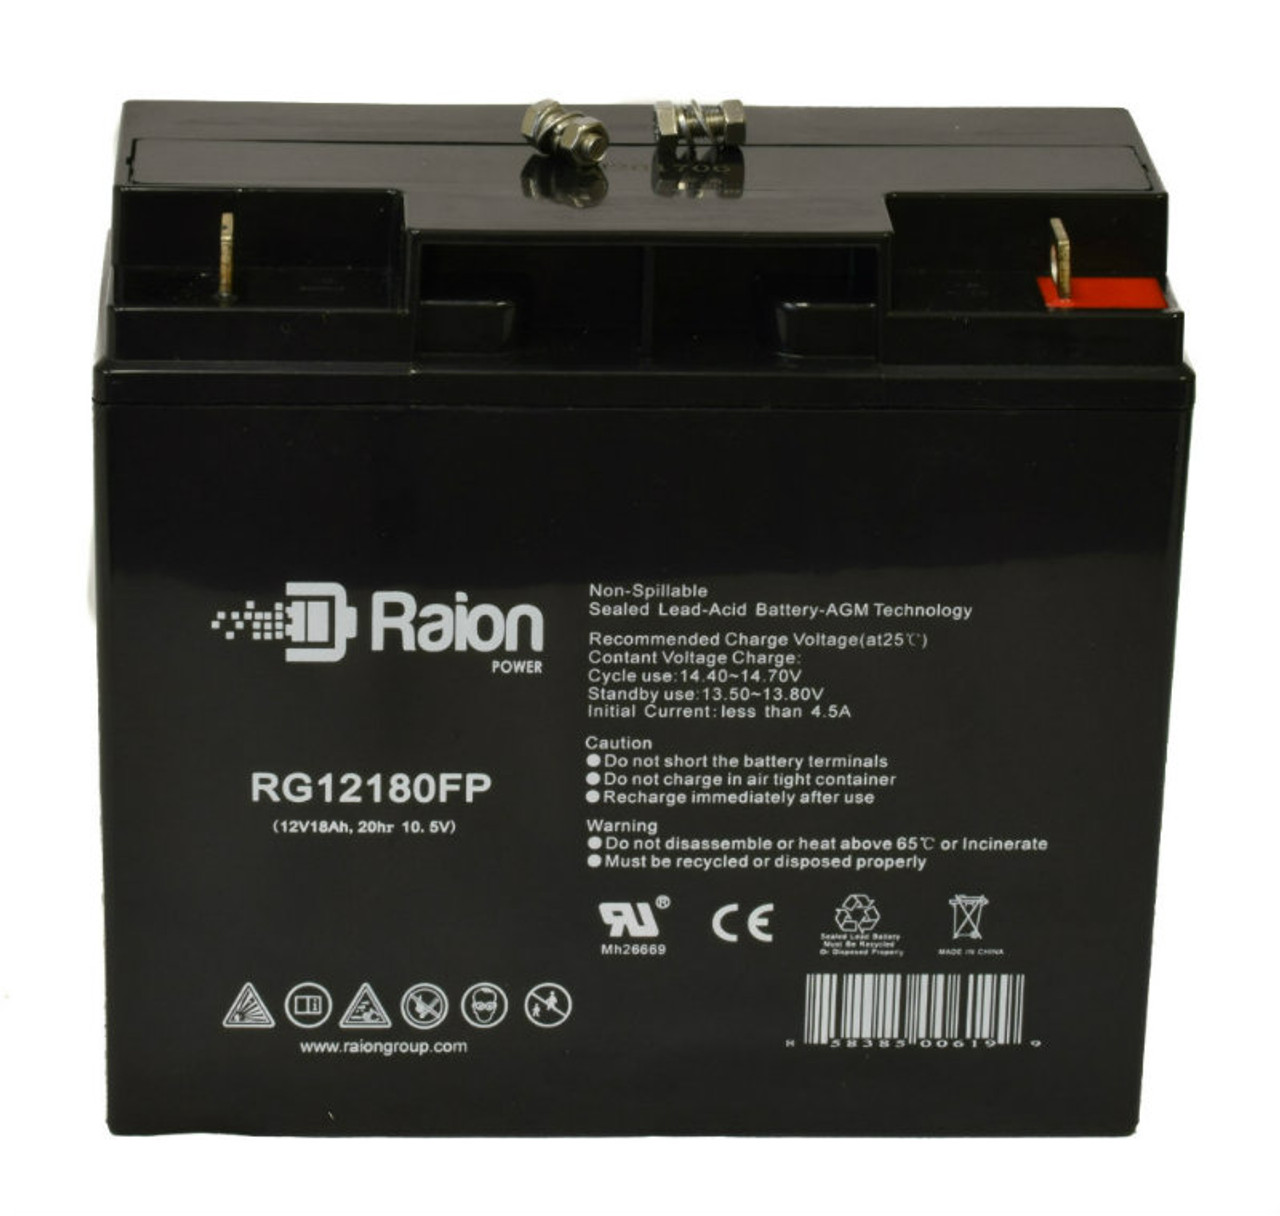 Raion Power RG12180FP 12V 18Ah Lead Acid Battery for BSB DC12-20